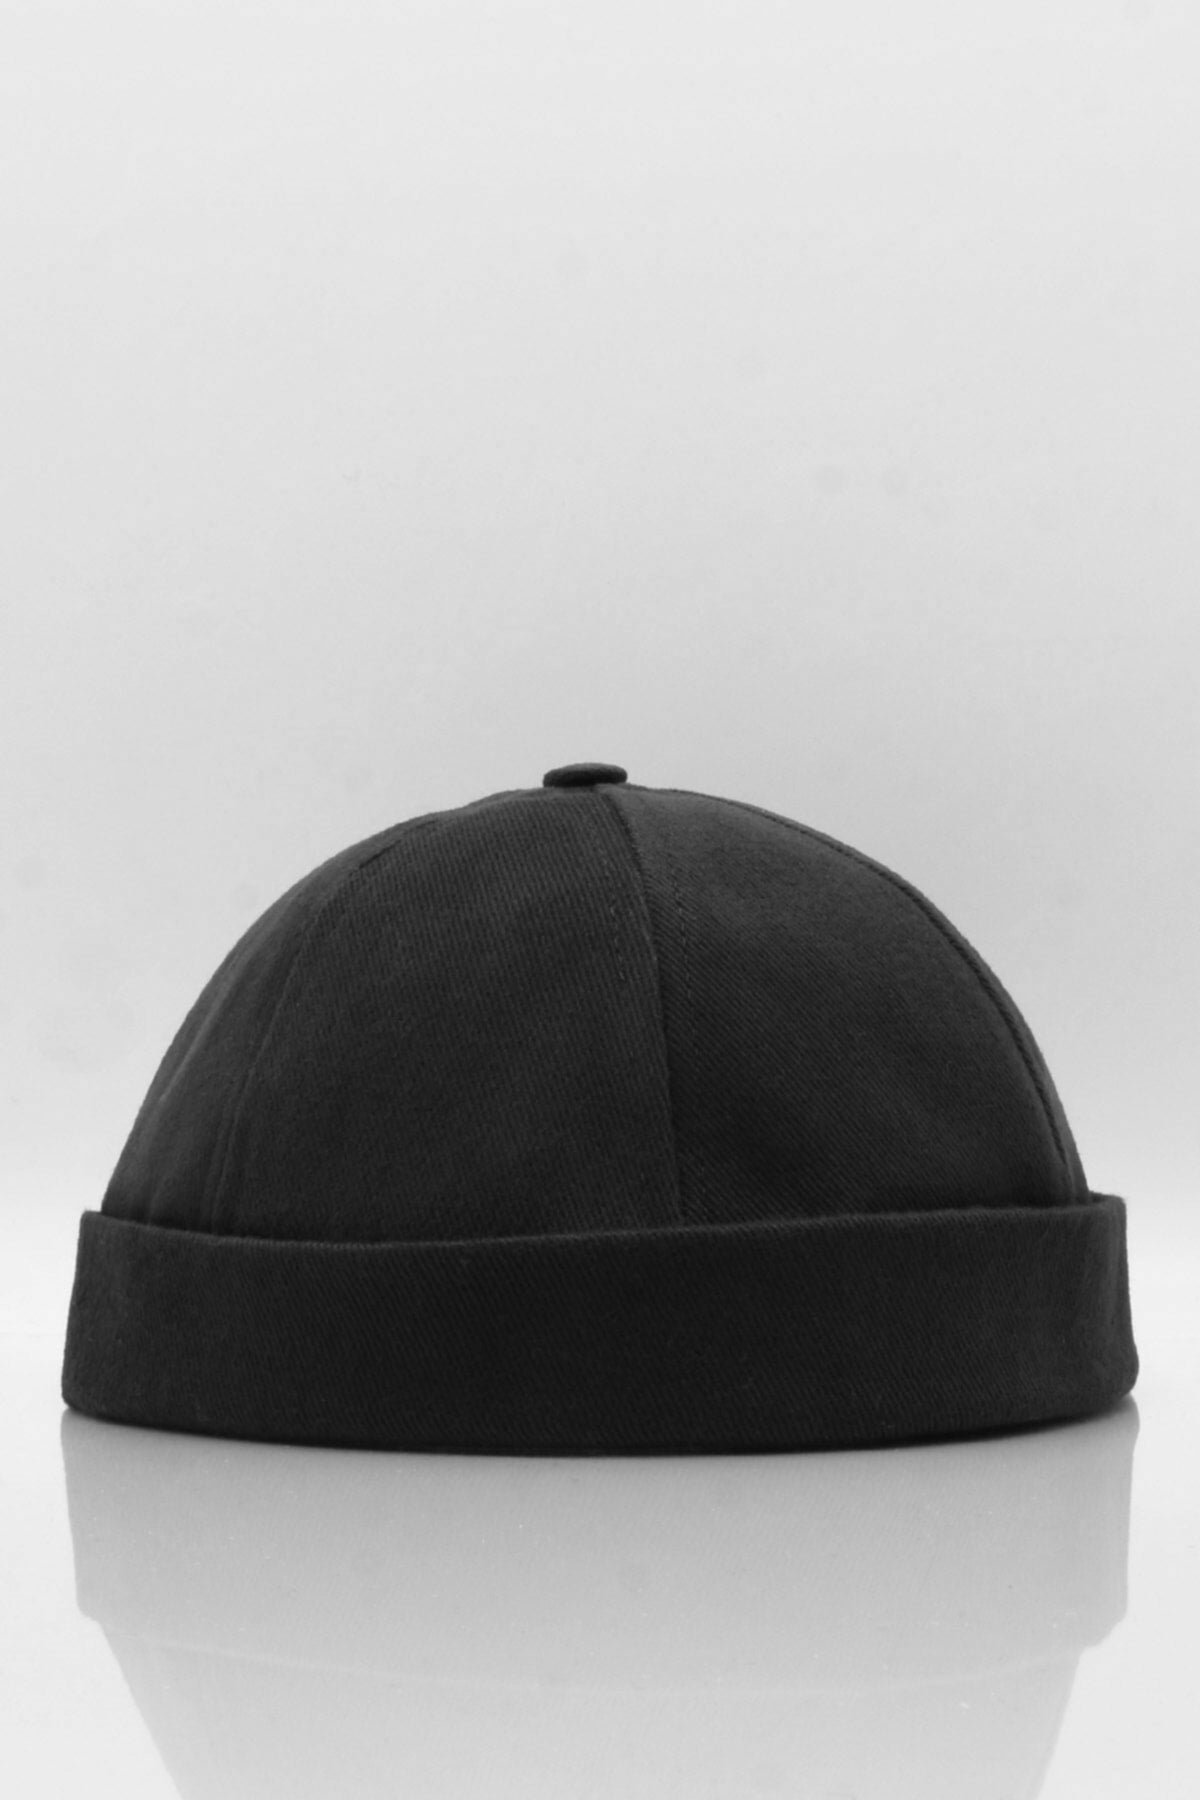 100% Cotton Cap Adjustable Docker Hat